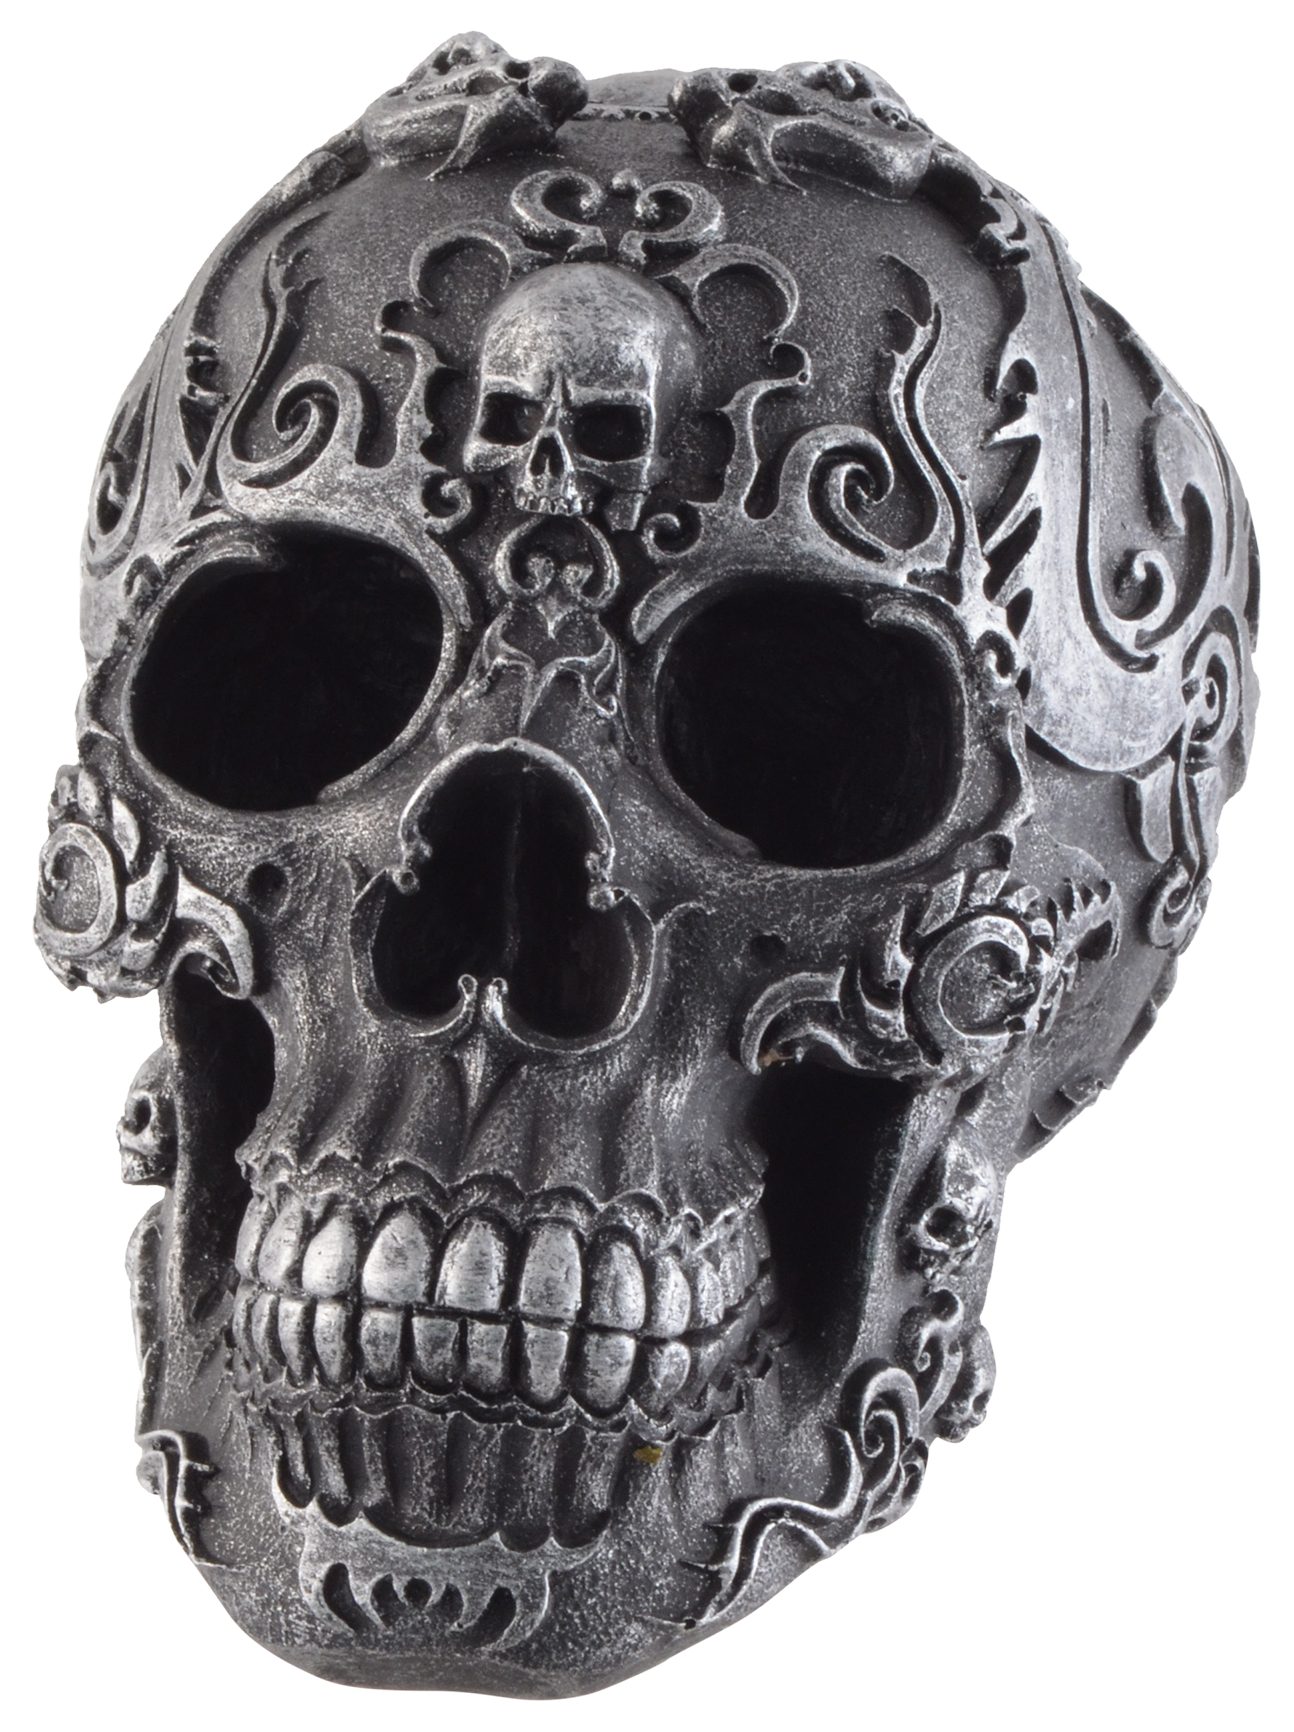 Vogler direct Gmbh schwarzer Kunststein, ca. 12x17x13 verziert, Symbolen mit "Gothik Schädel LxBxH cm silbernen aus Dekofigur Skull" Größe